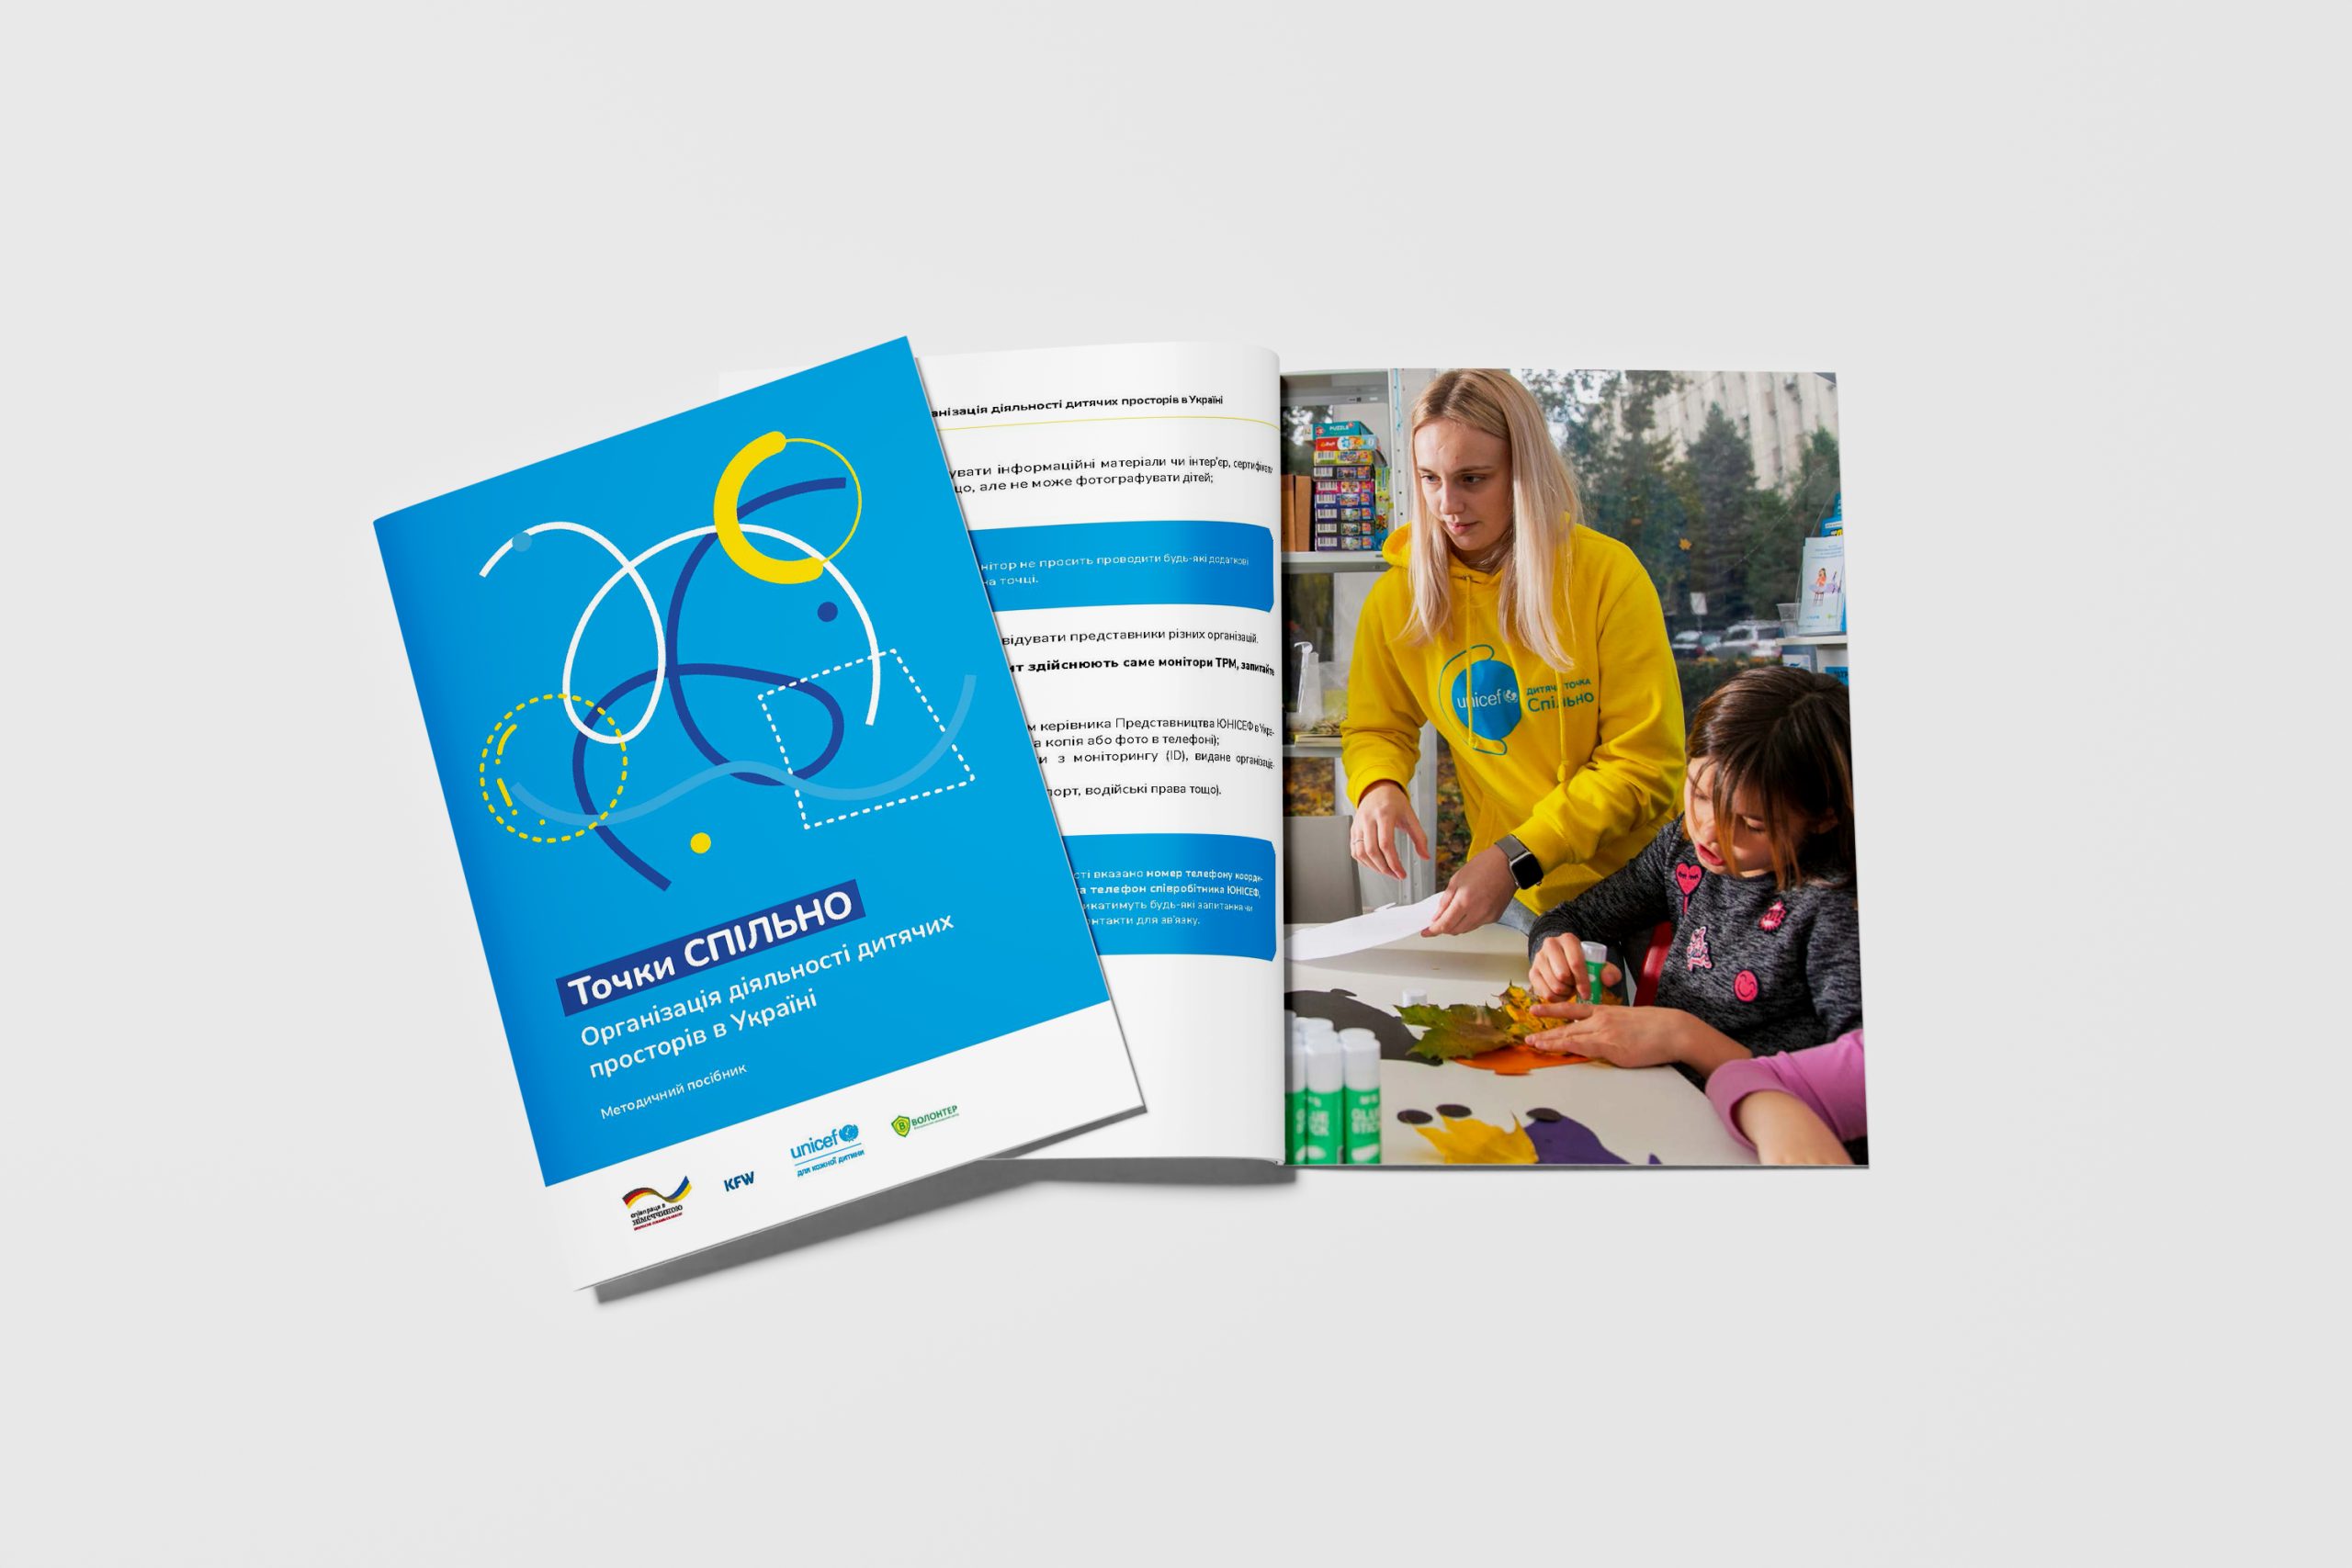 Посібник “Точки СПІЛЬНО: організація діяльності дитячих просторів в Україні”